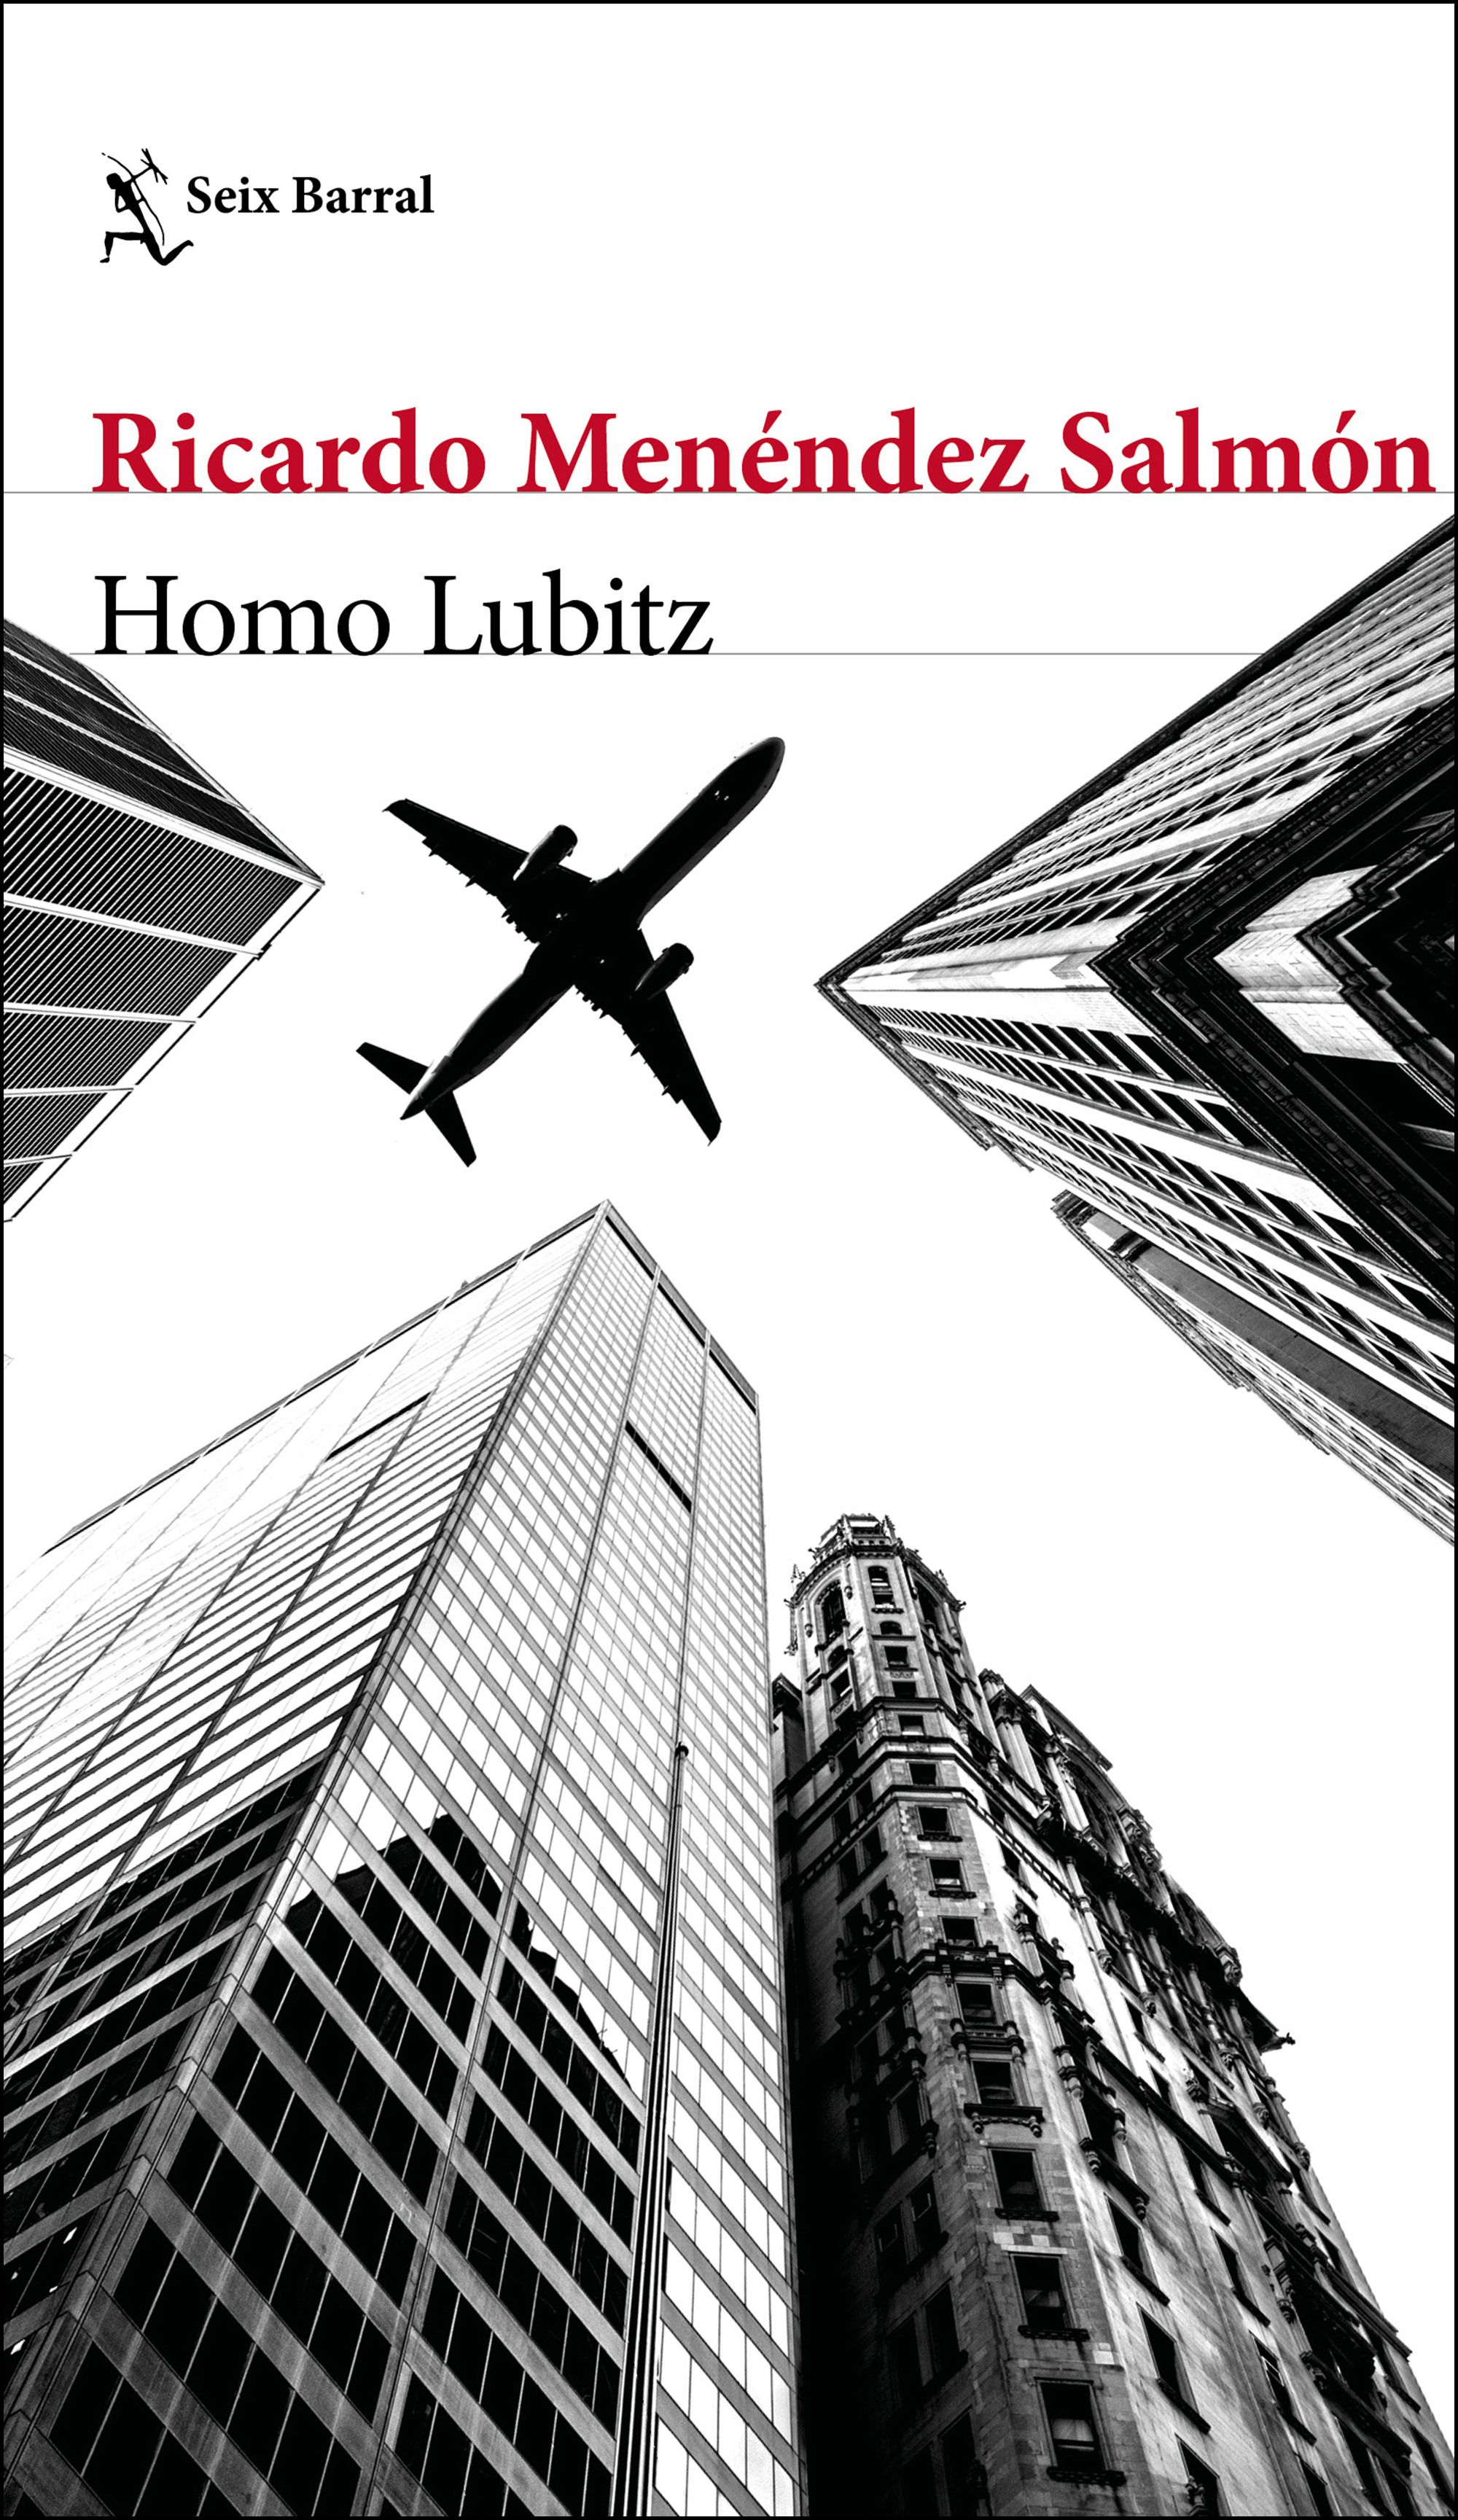 RICARDO MENÉNDEZ SALMÓN. Homo Lubitz (Seix Barral)